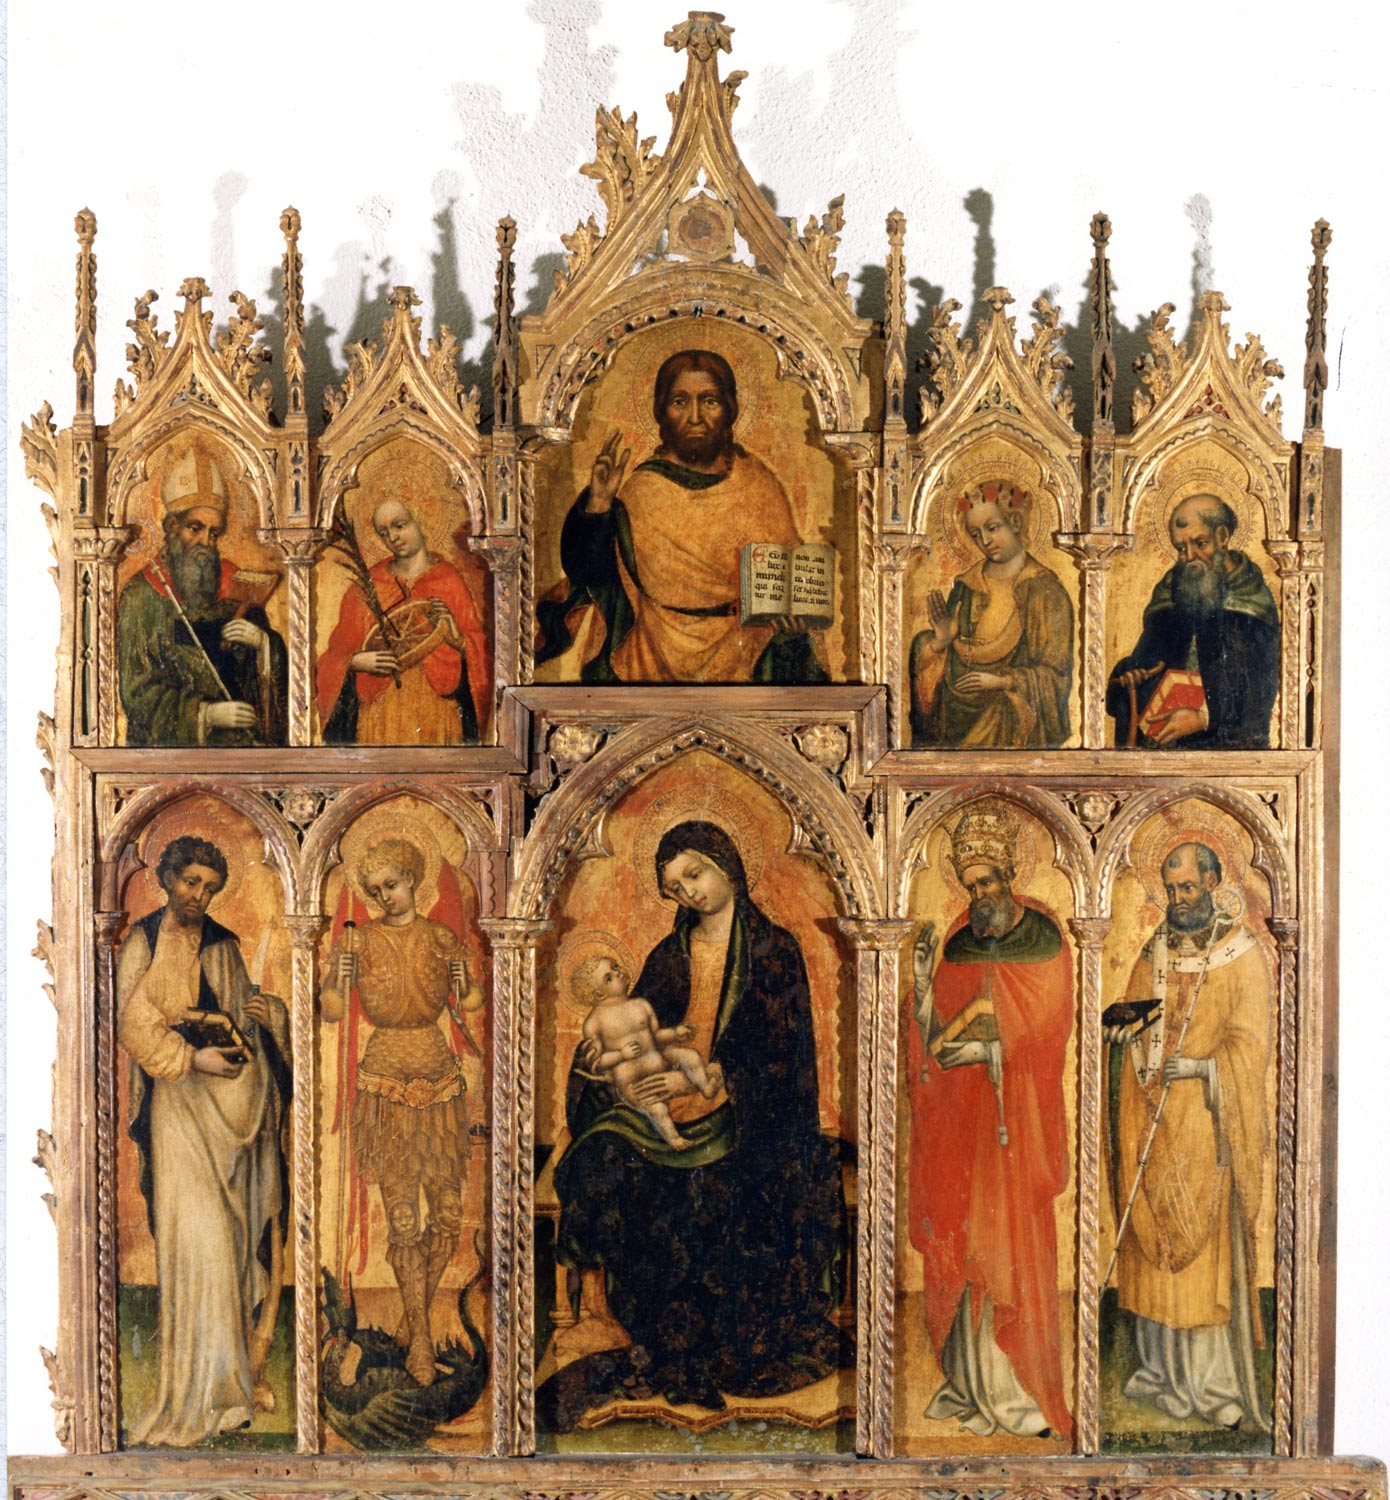 Jacobello del Fiore, Madonna con Bambino, Cristo benedicente e santi (1420-1430 circa; tempera su tavola; L'Aquila, Museo Nazionale d'Abruzzo)